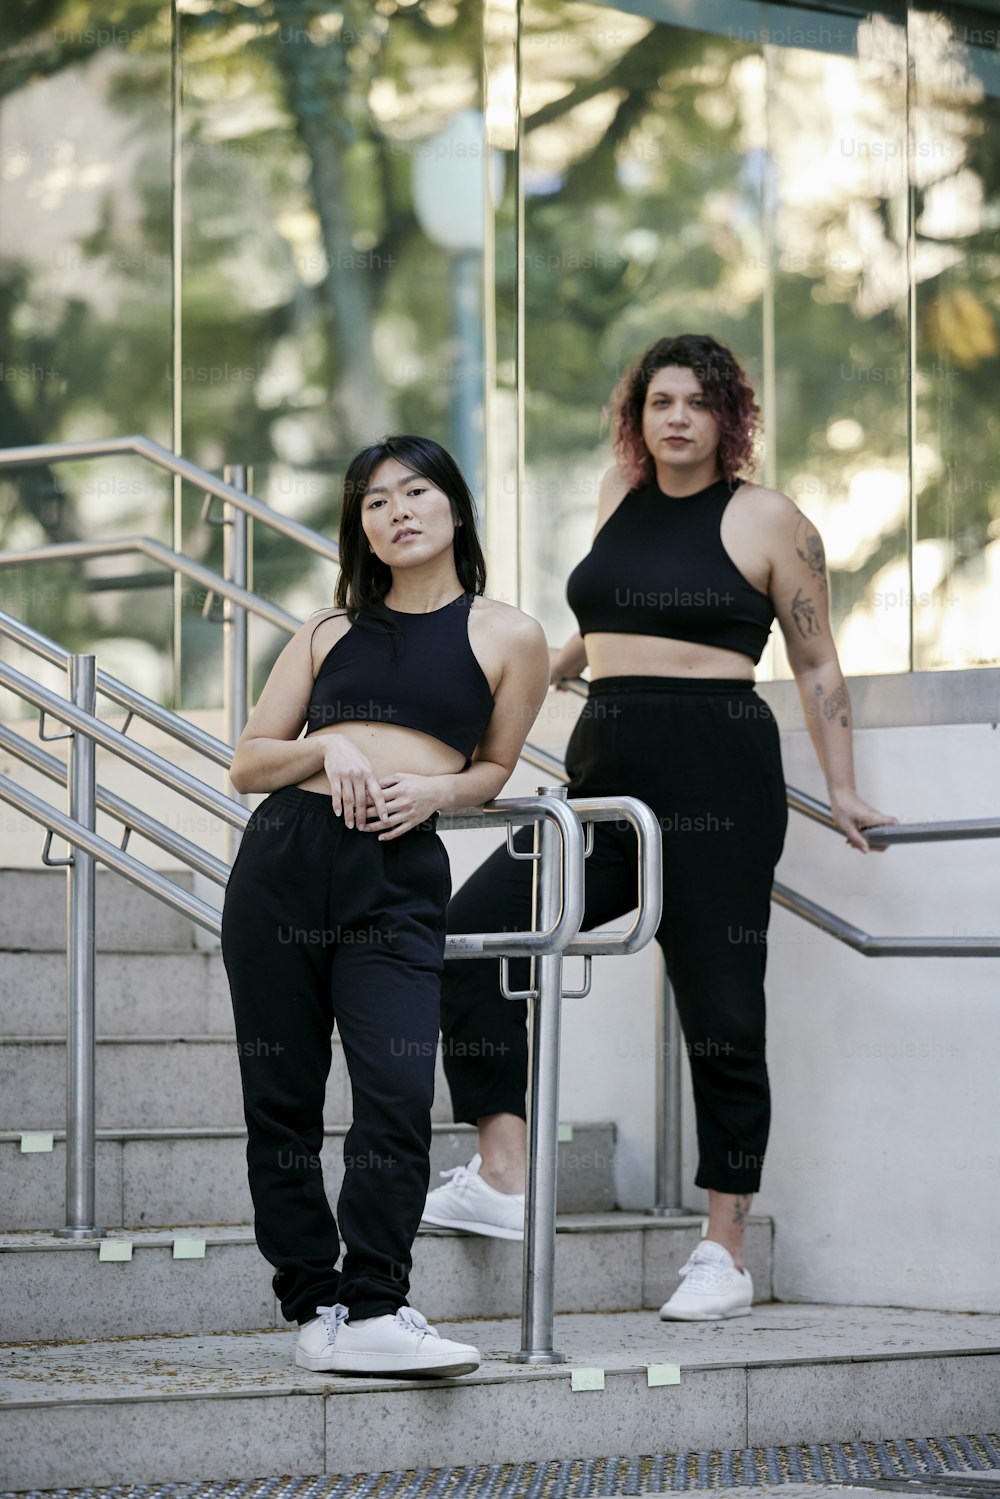 Zwei Frauen in schwarzen Outfits, die auf einer Treppe stehen